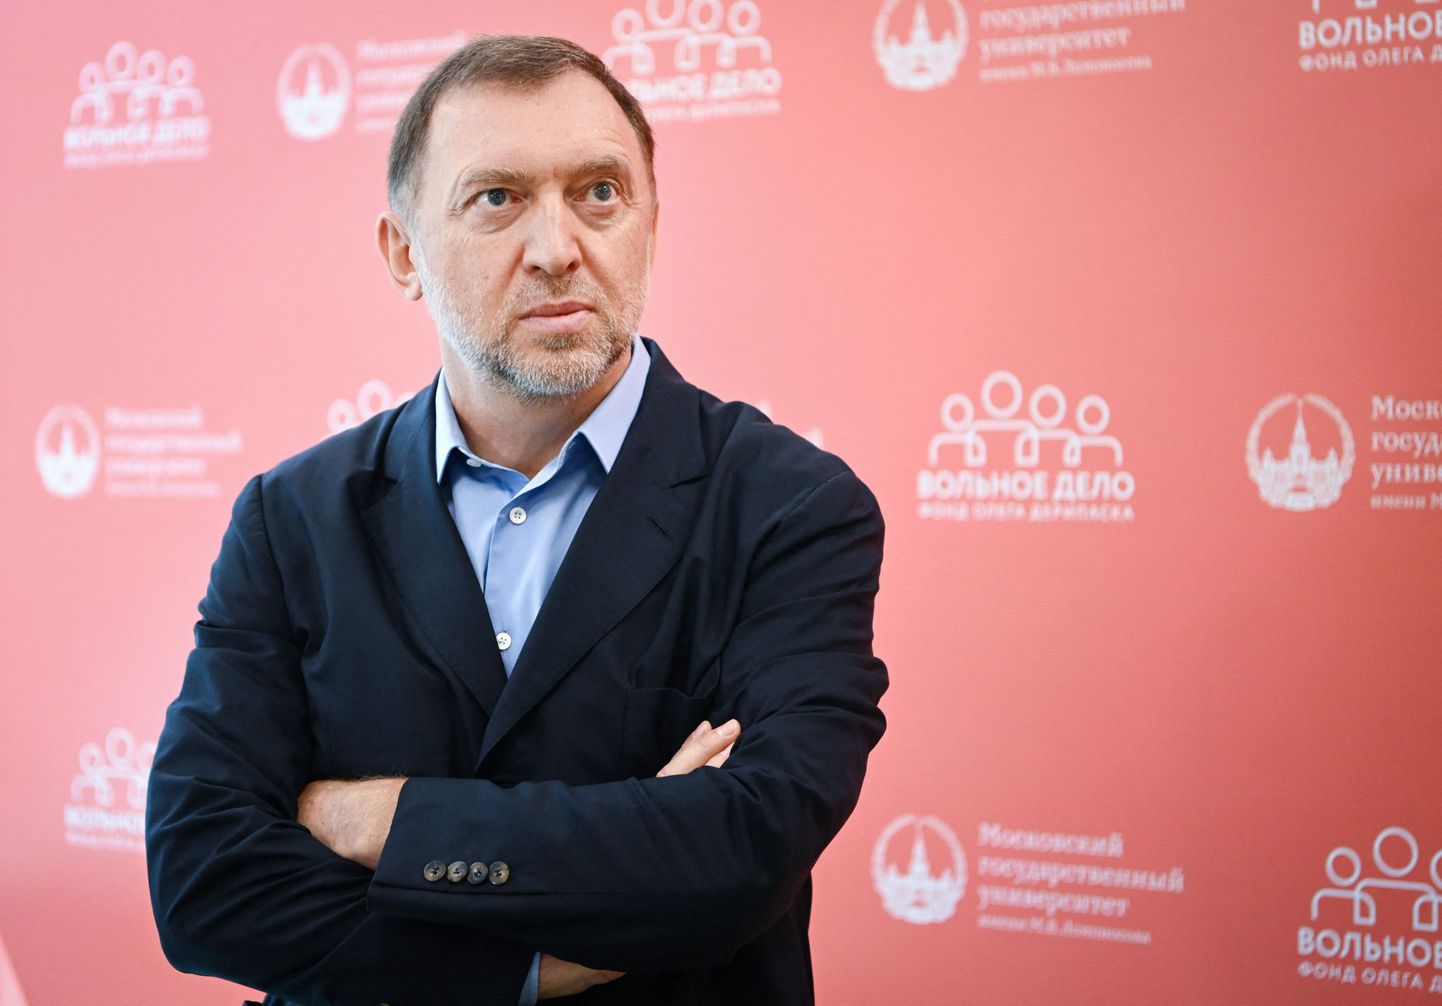 Vene oligarh Oleg Deripaska.